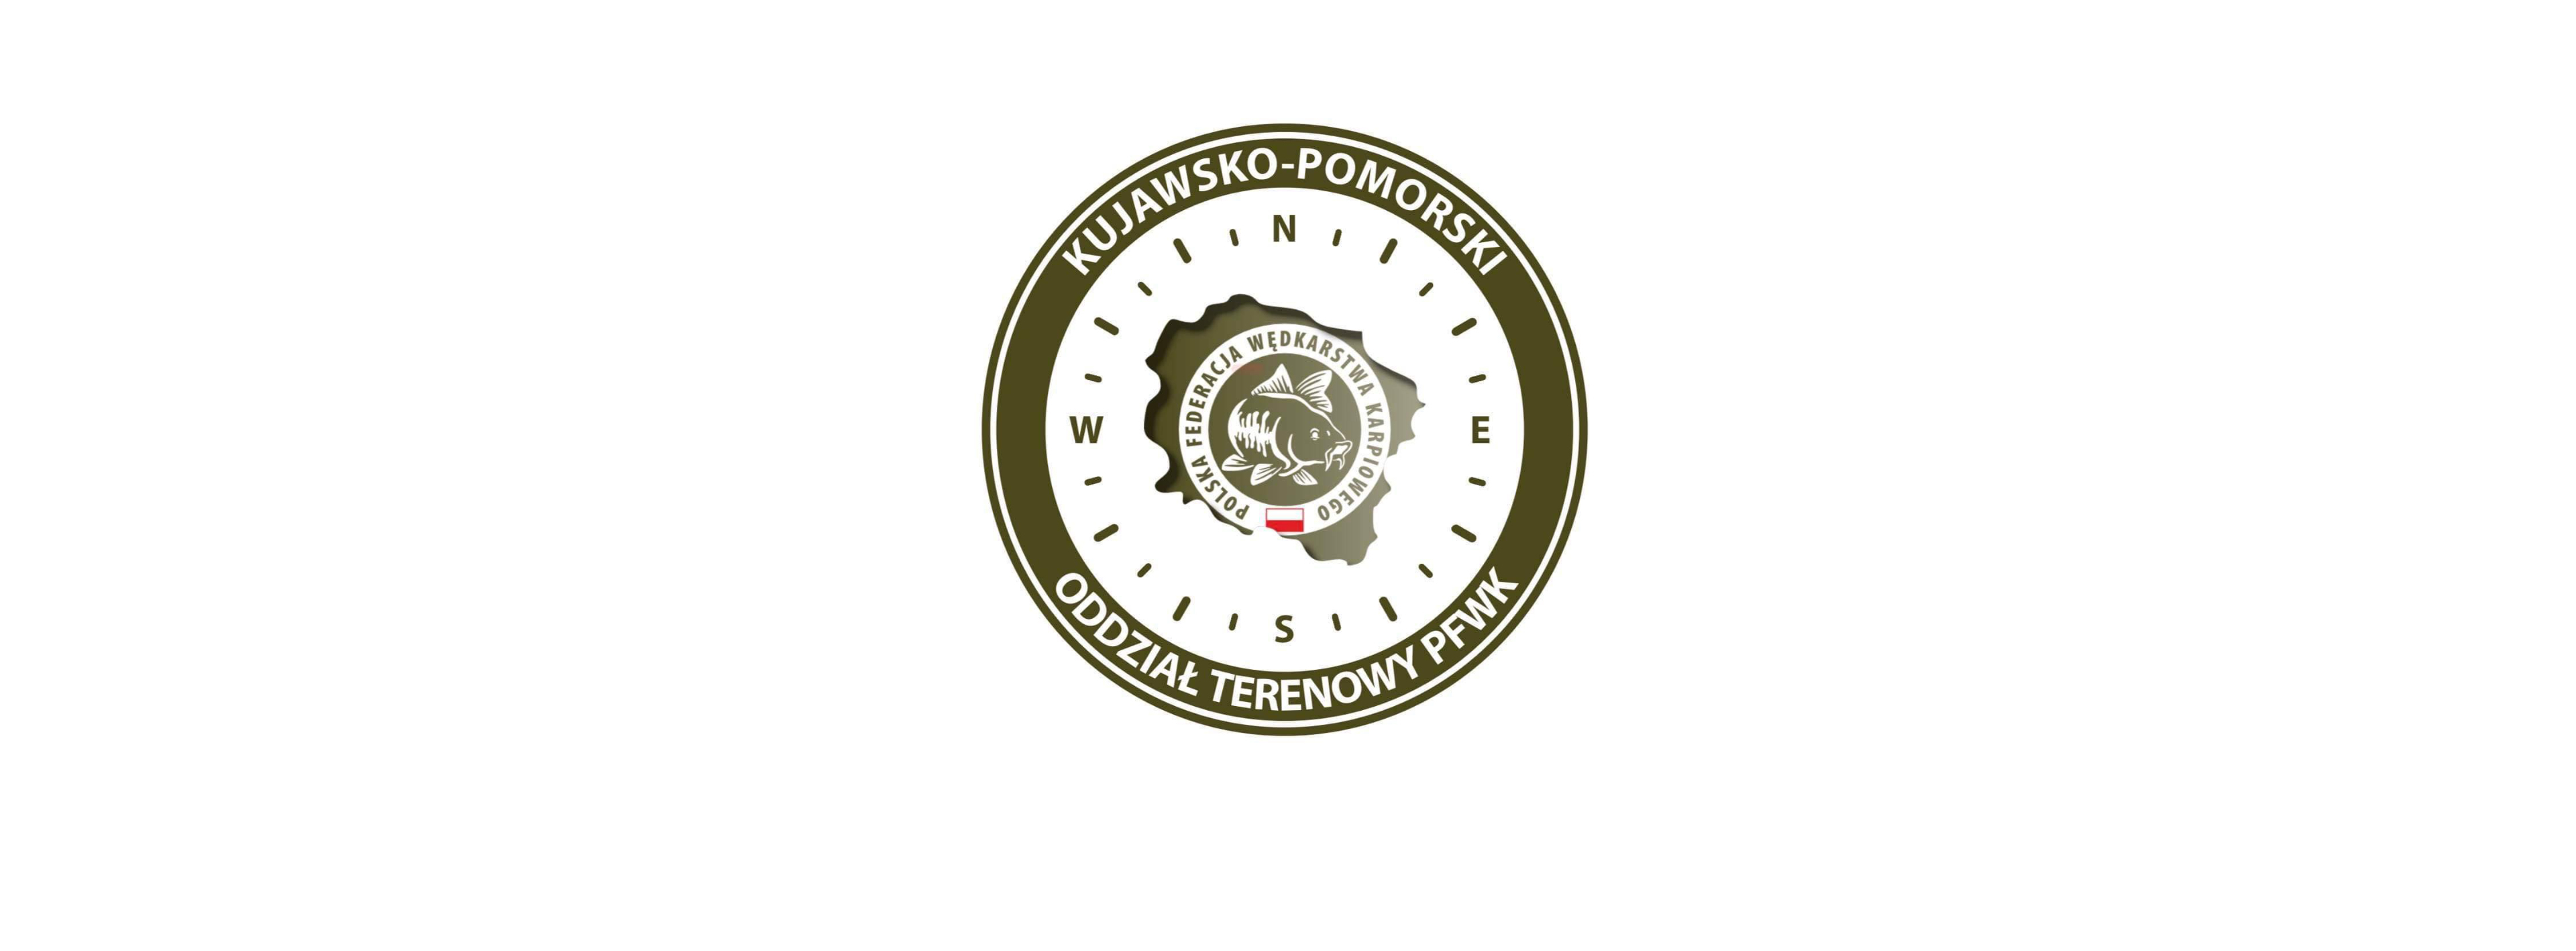 1 🏆Puchar Kujawsko-Pomorskiego Oddziału terenowego PFWK